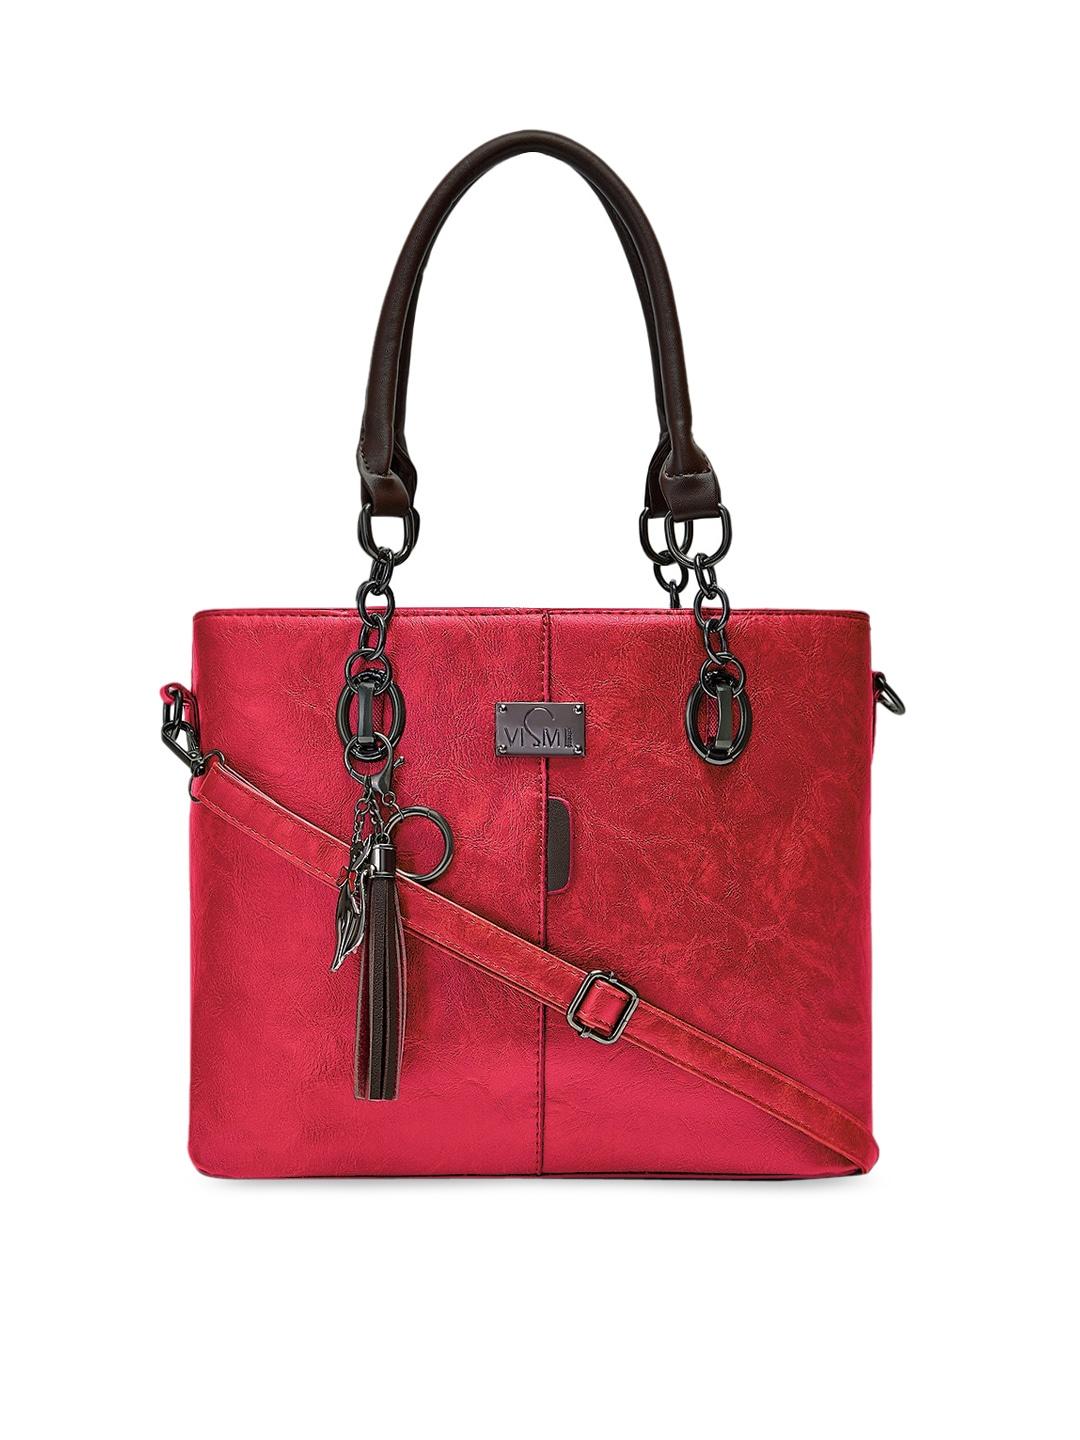 vismiintrend red solid structured handheld bag